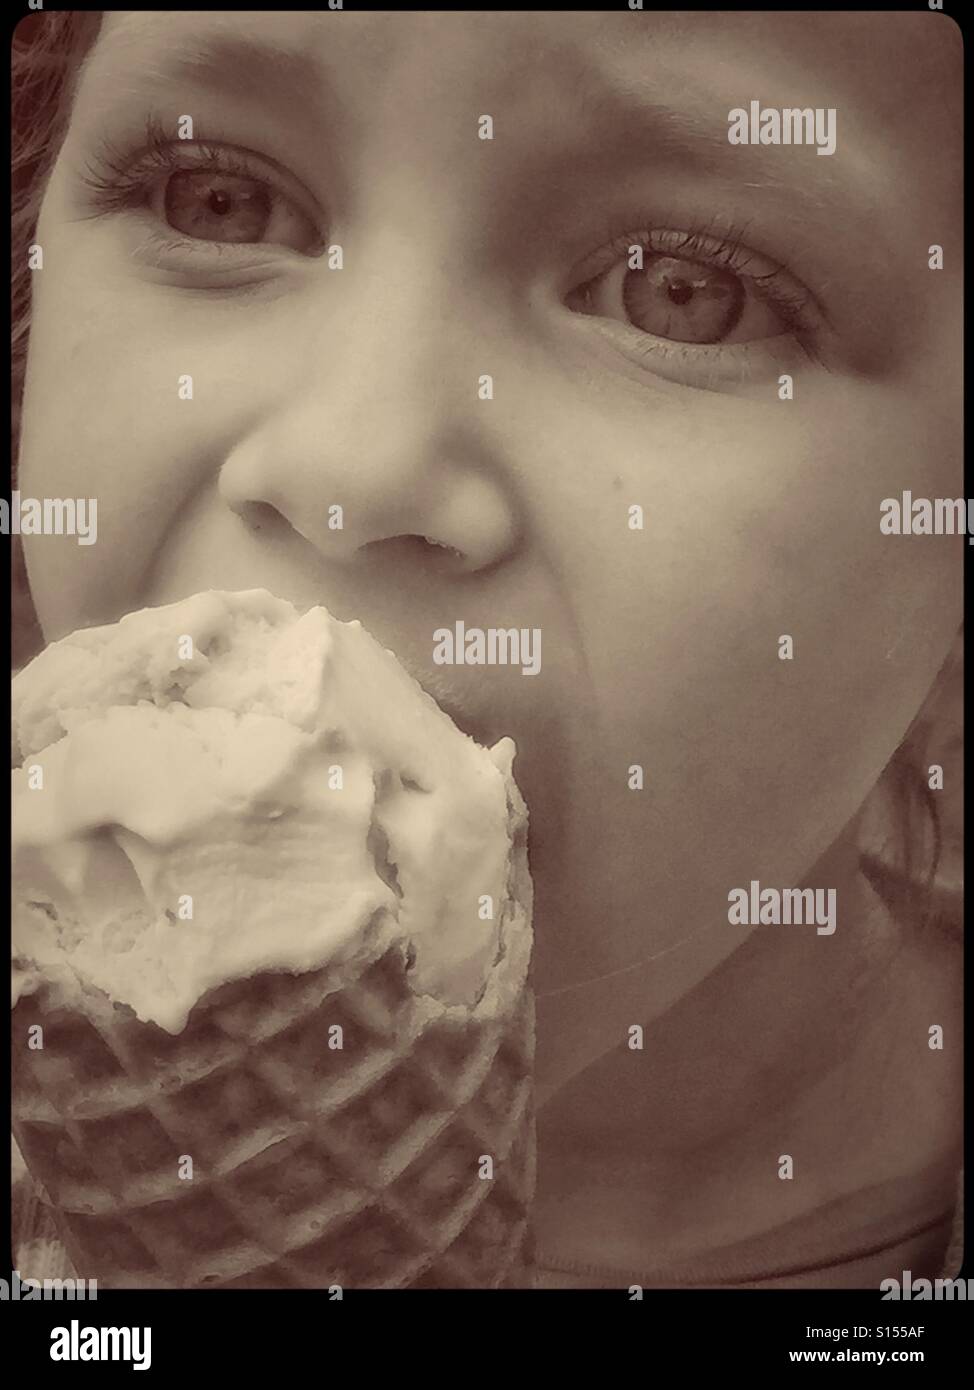 Un vicino, dai toni seppia immagine di un 4 anno vecchia ragazza di mangiare un grande cono riempito con gelato alla vaniglia. Le gioie dell'infanzia e l'estate! Credito foto © COLIN HOSKINS. Foto Stock